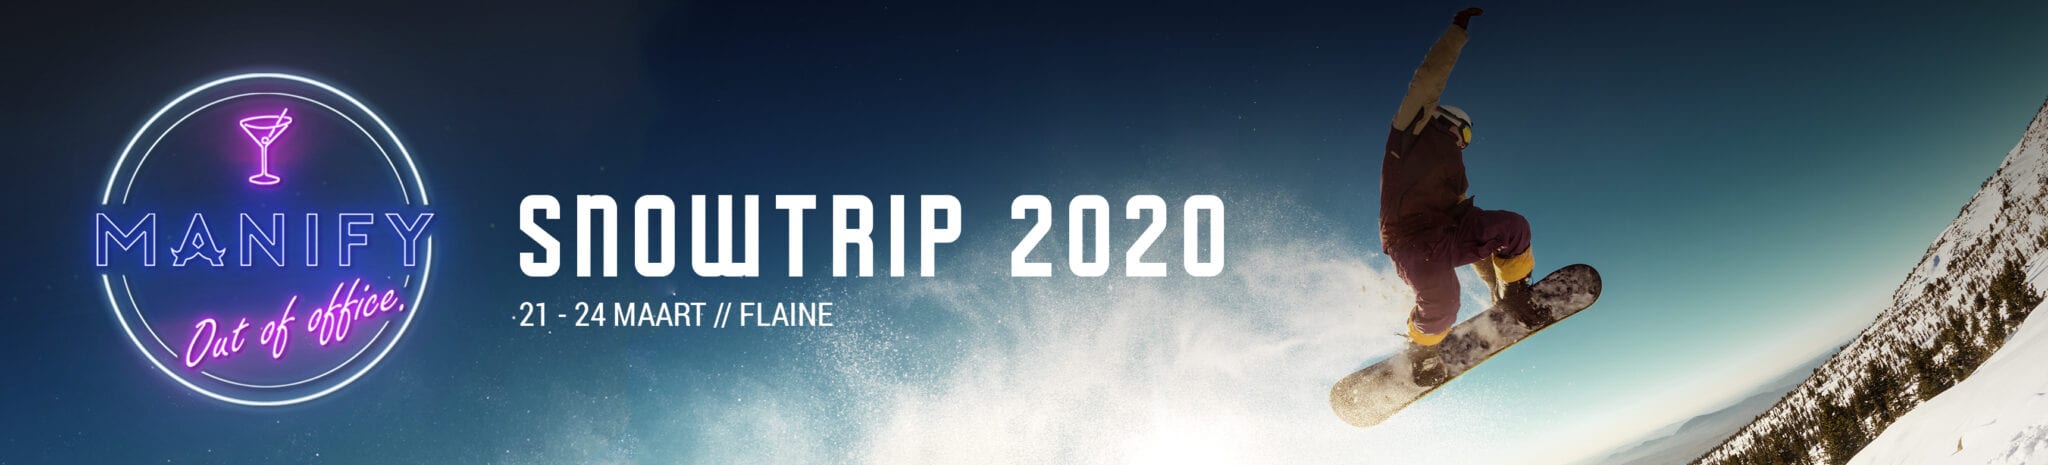 manify snowtrip 2020